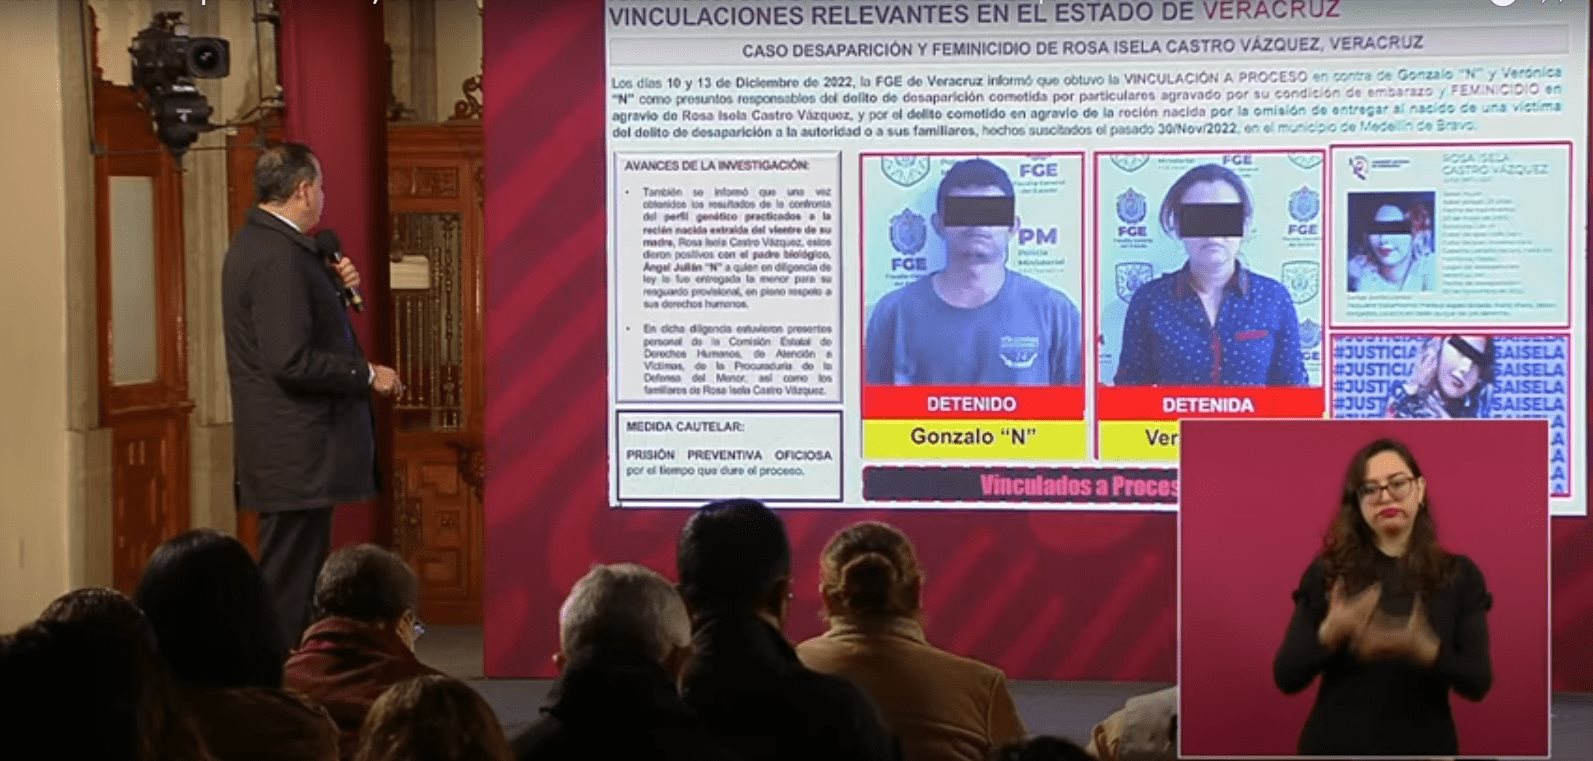 Berdeja anuncia vinculación a proceso de presuntos implicados en caso de Rosa Isela en Veracruz